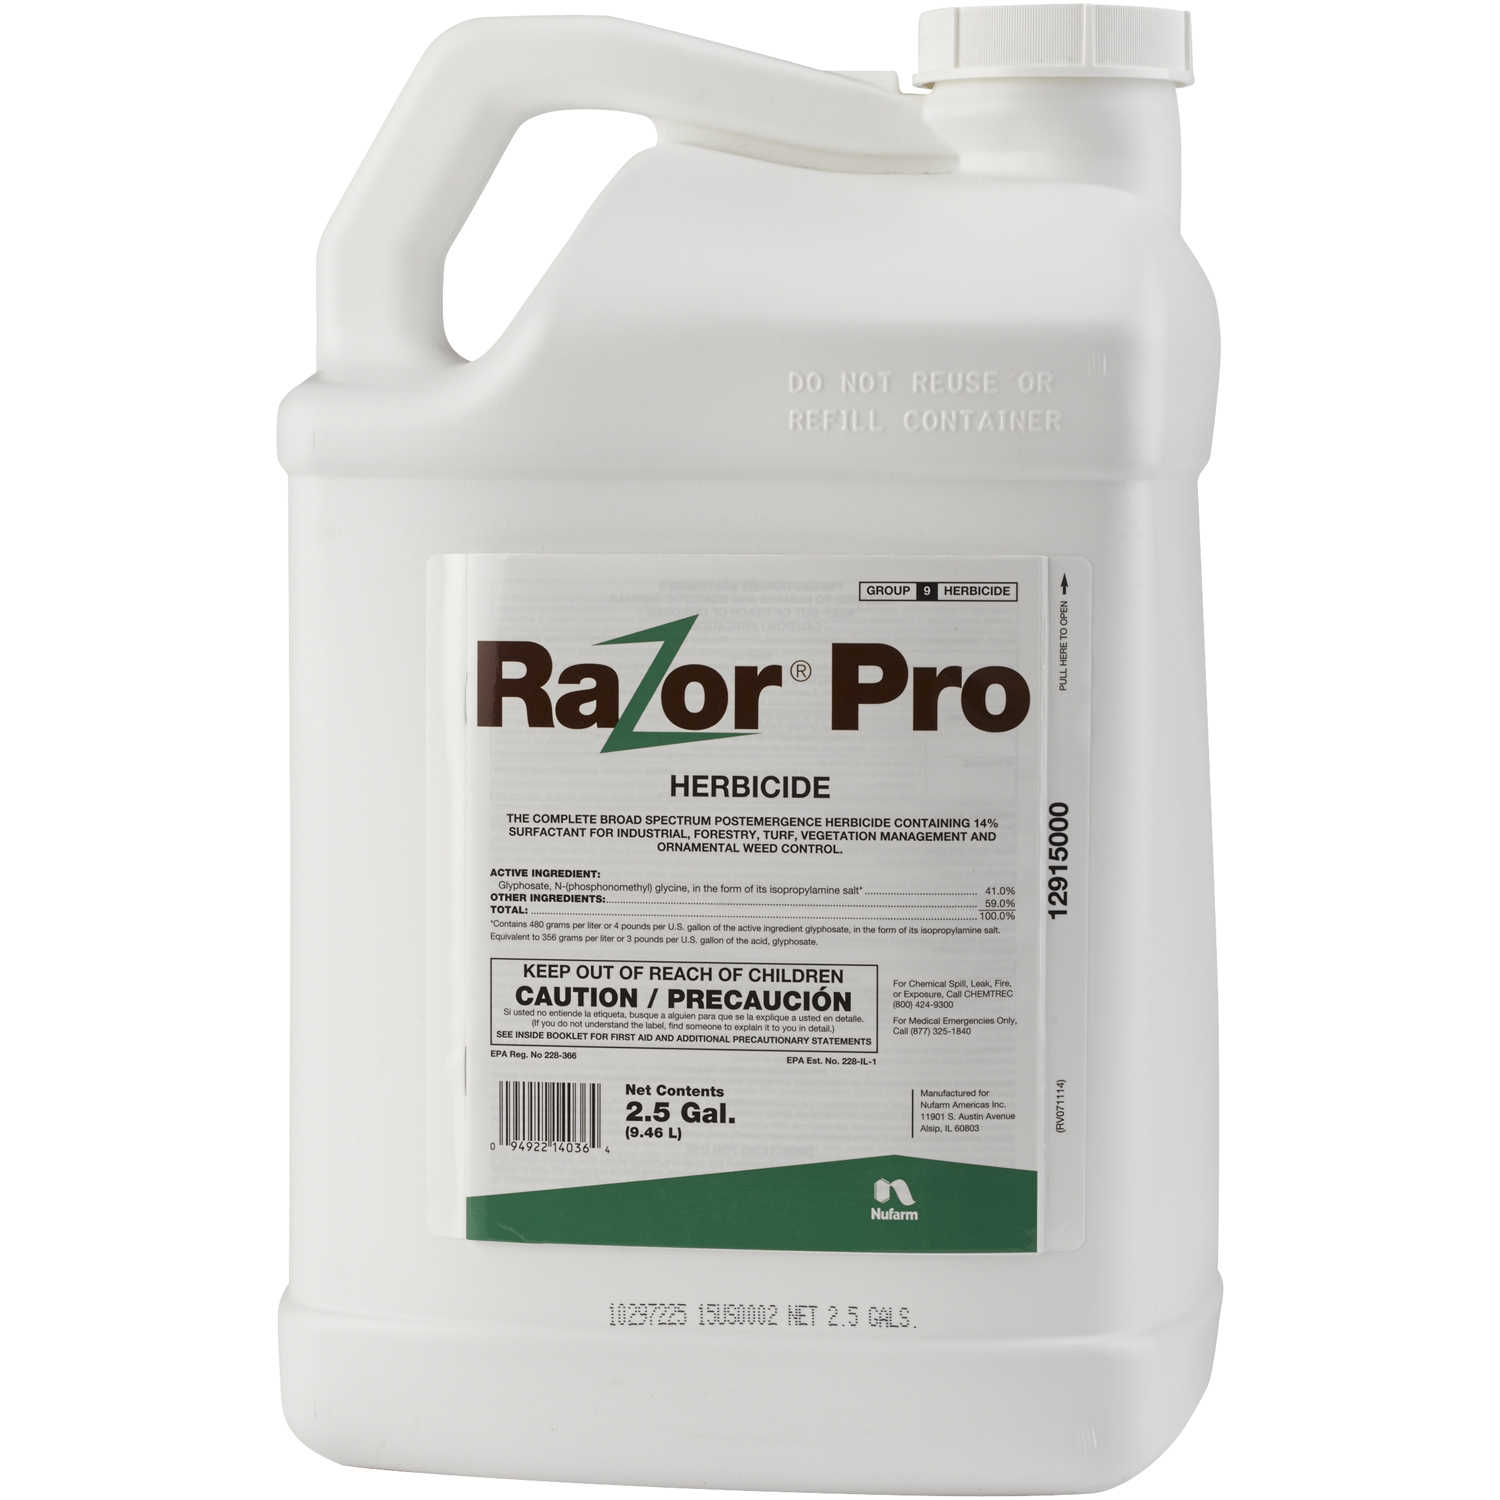 Razor® Pro Herbicide